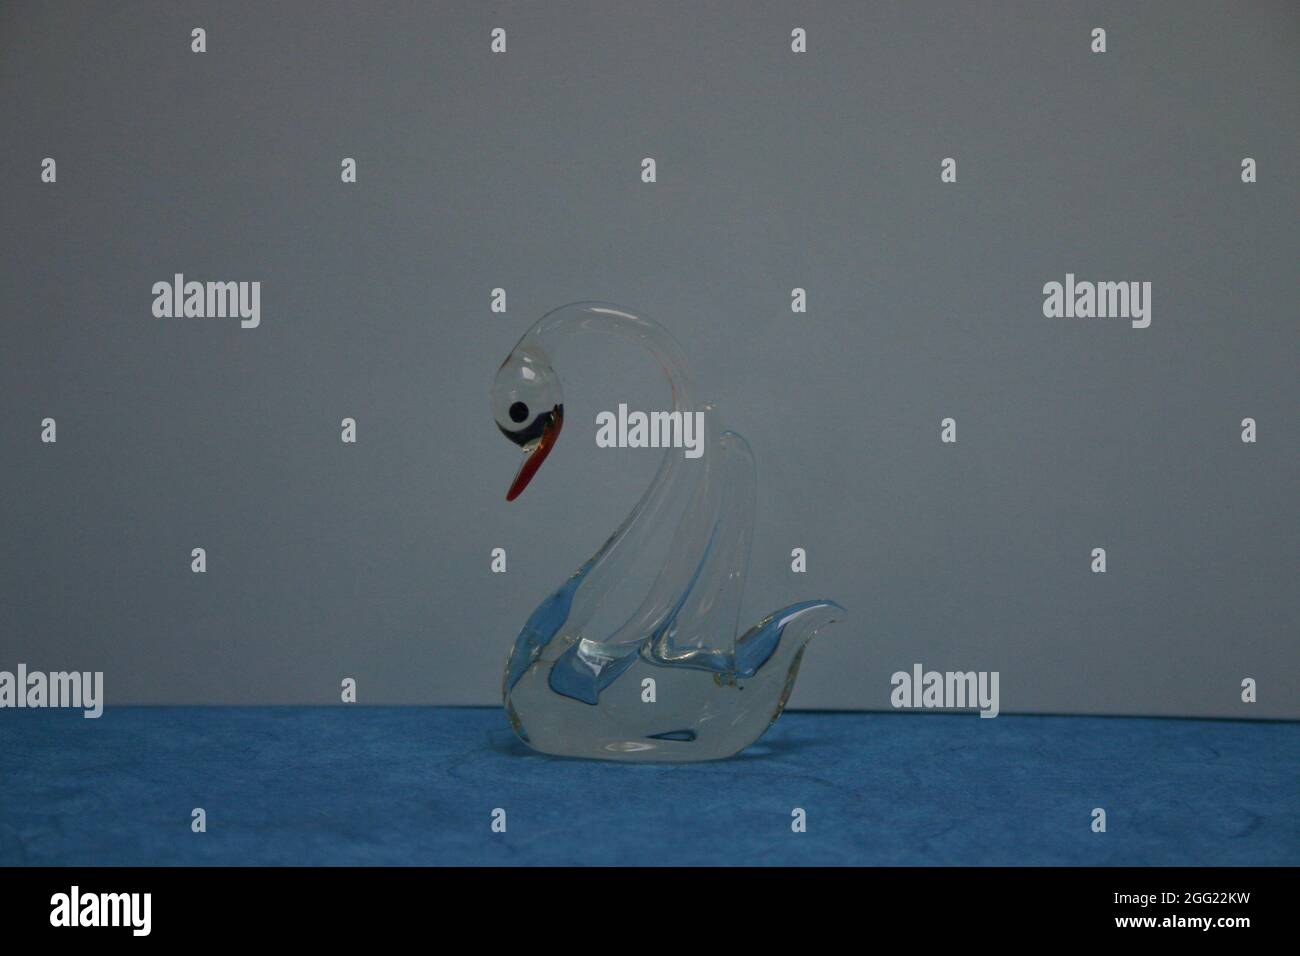 Deko Figur Schwan trasparente aus Glas auf Blauen Untergrund Foto Stock